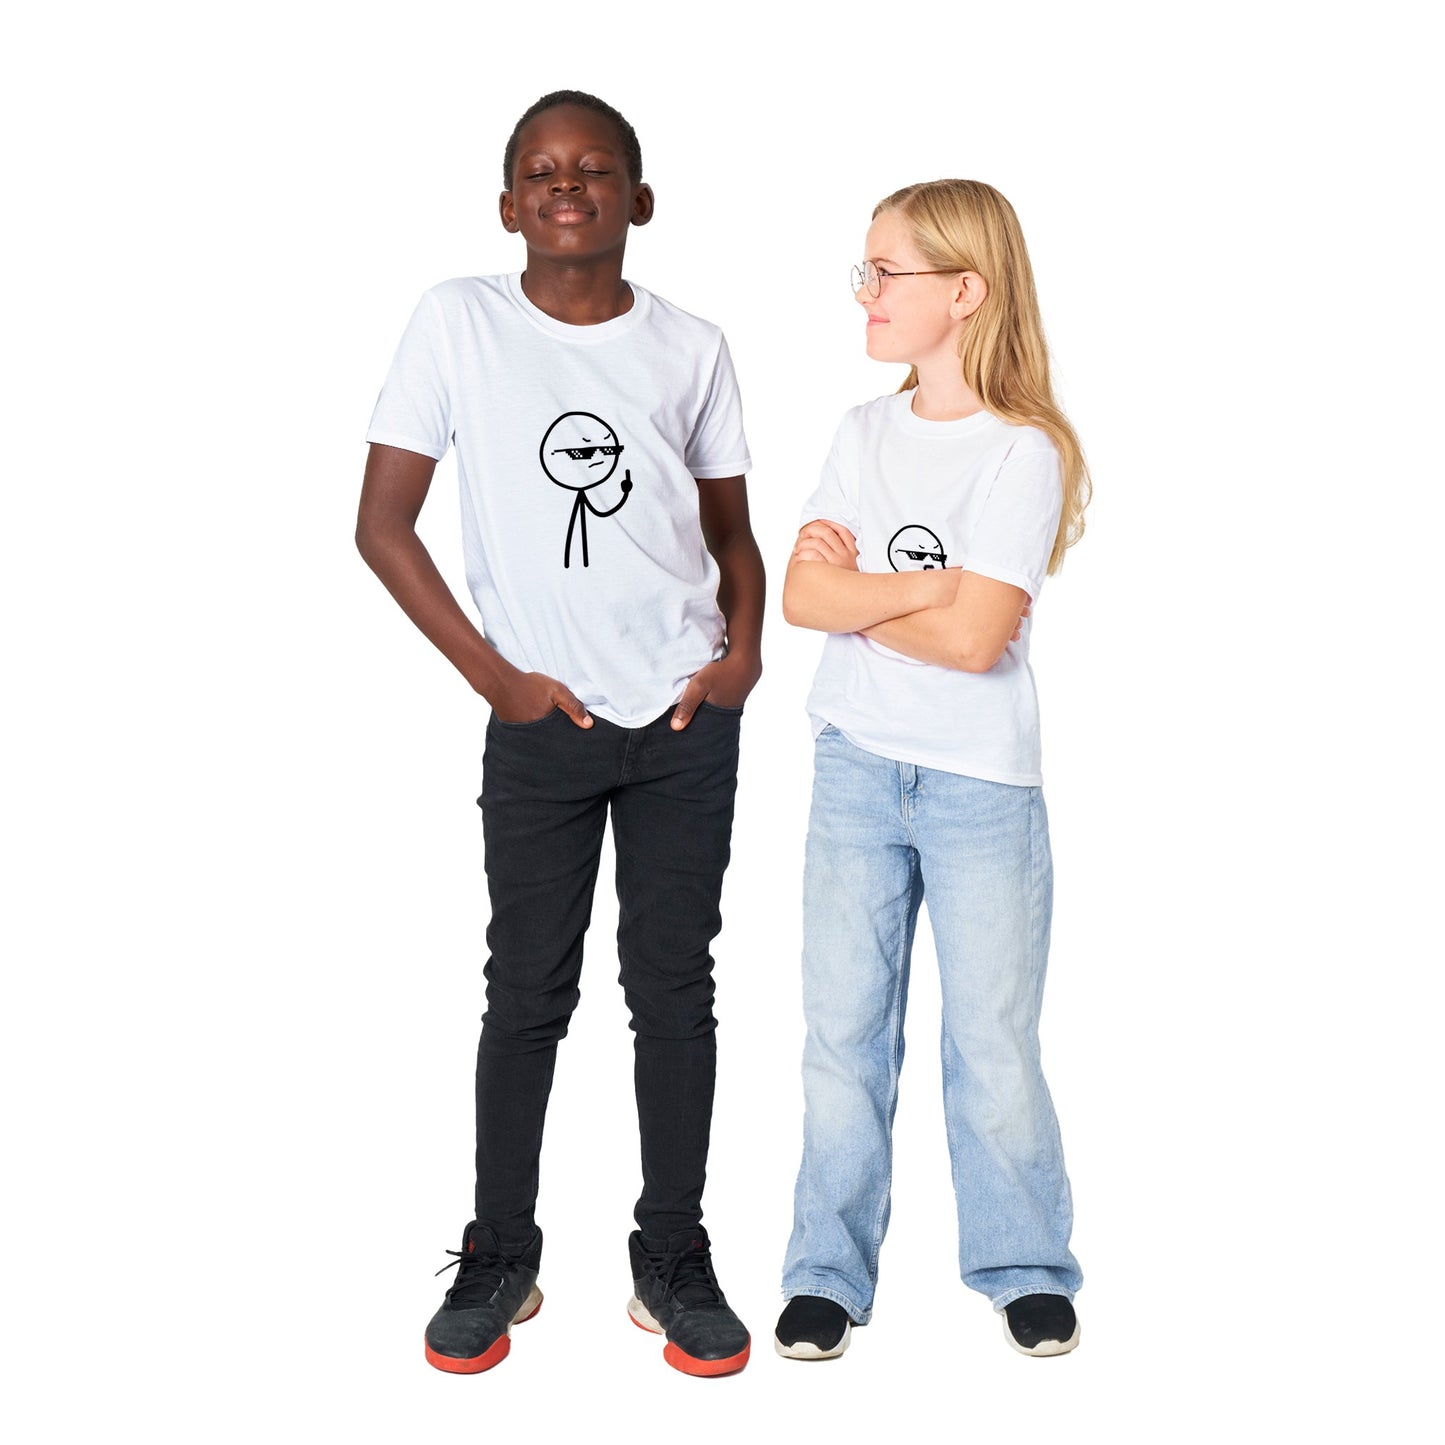 Sjove T-shirts - Middlefinger Thug Artwork Drawing - Klassisk Børne T-shirt